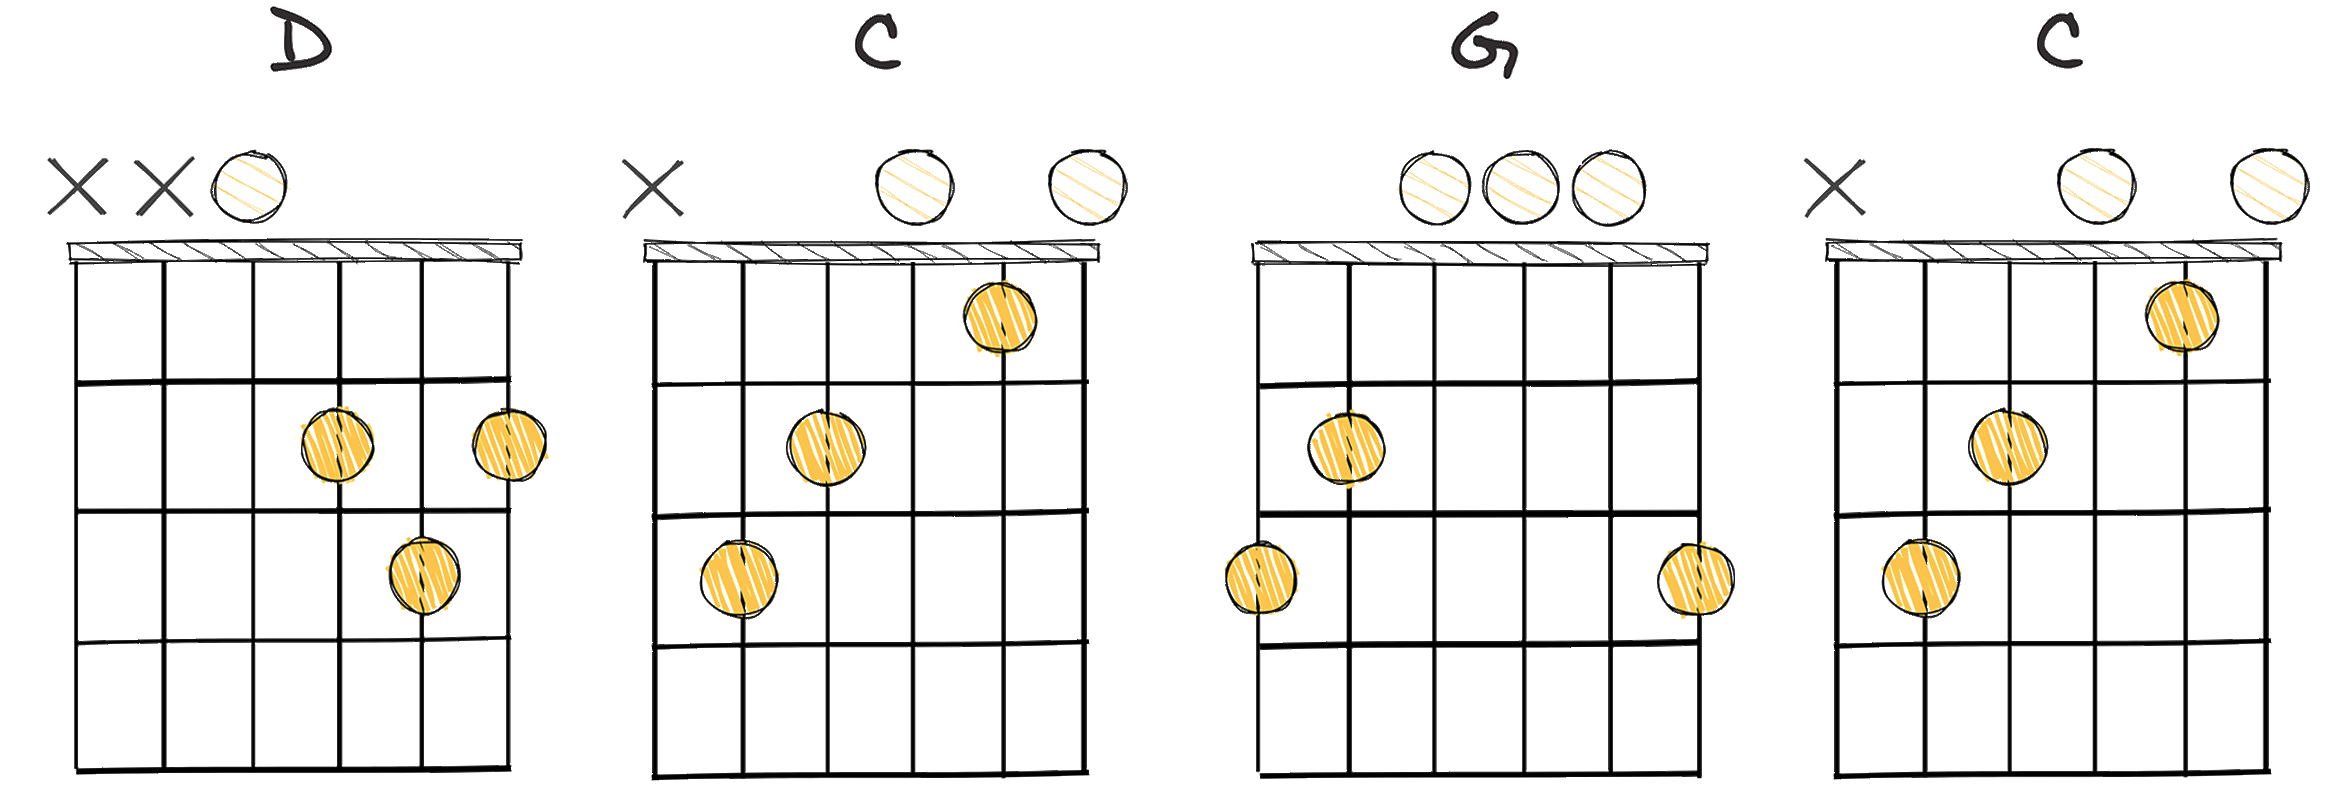 V-IV-I-IV (5-4-1-4) chords diagram